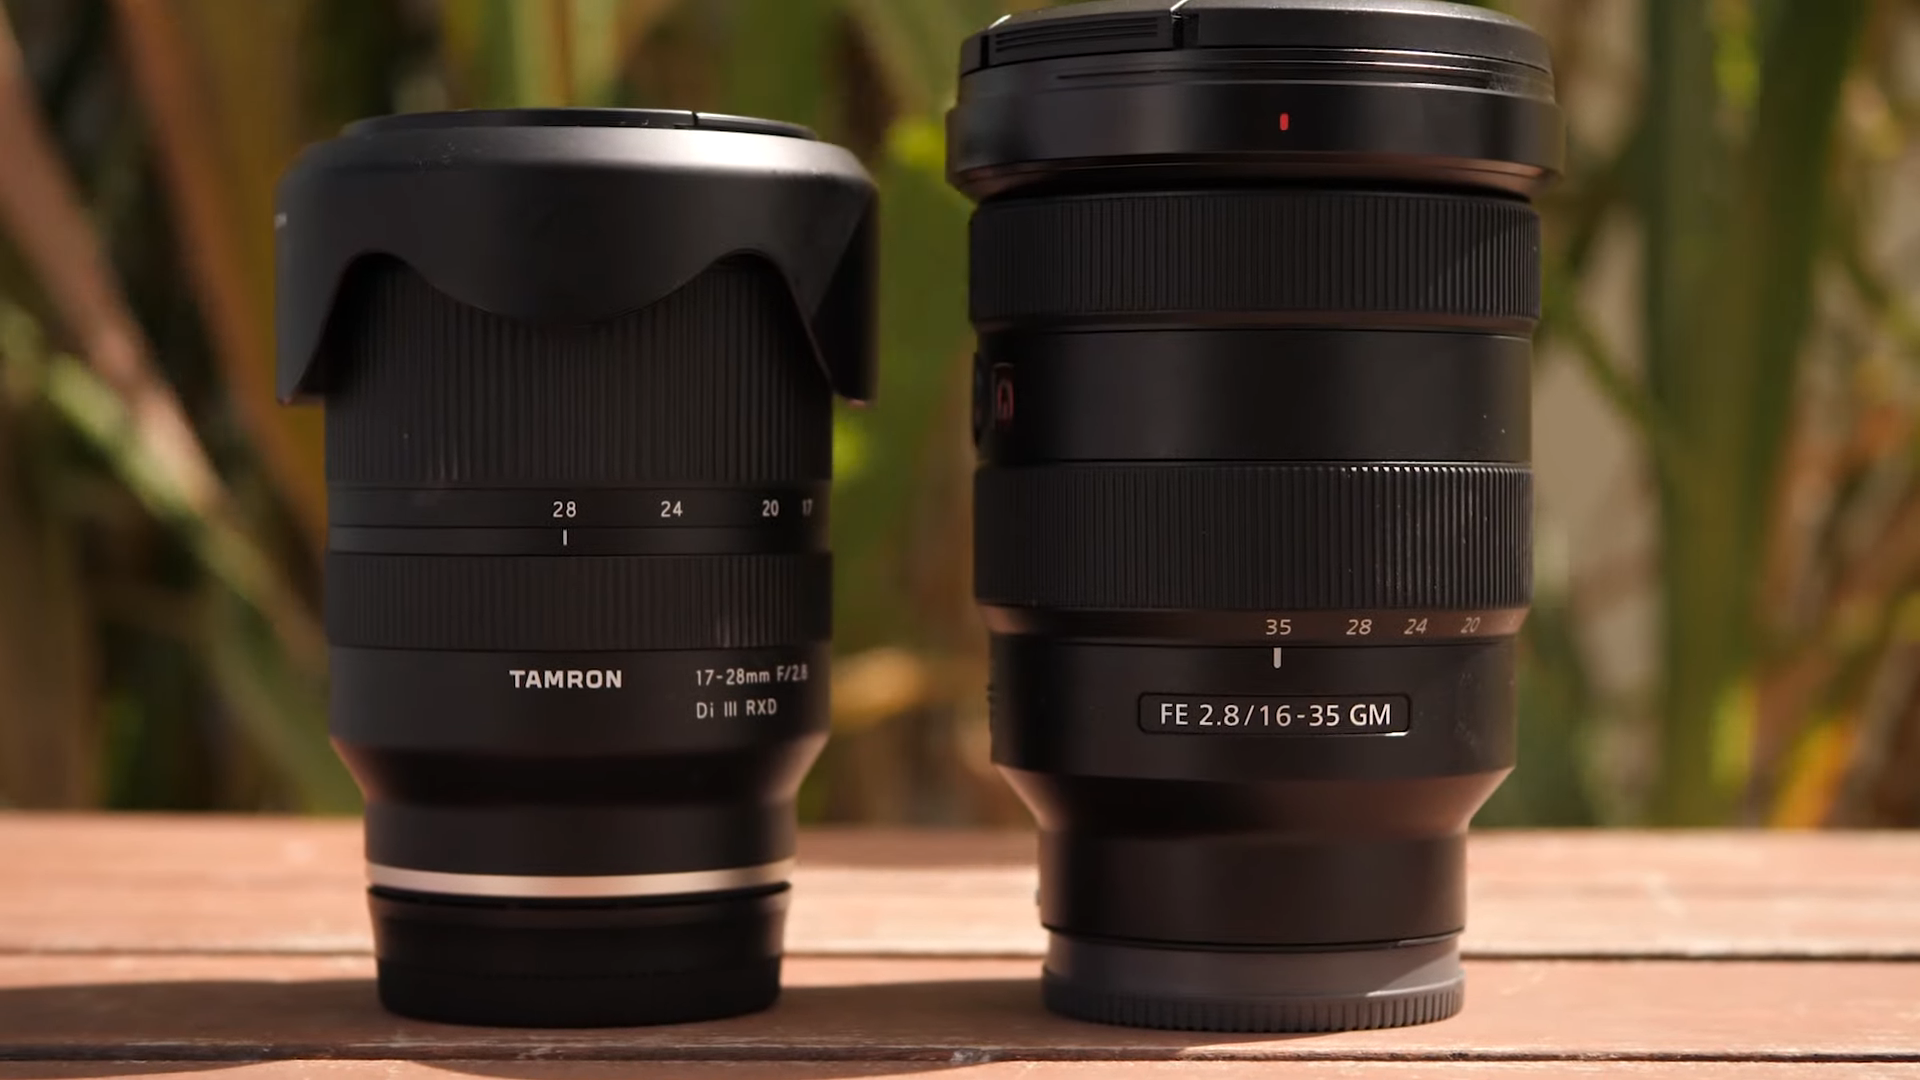 Ống kính Tamron 17-28mm FE: Nét hơn một chút so với Sony FE 16-35mm GM